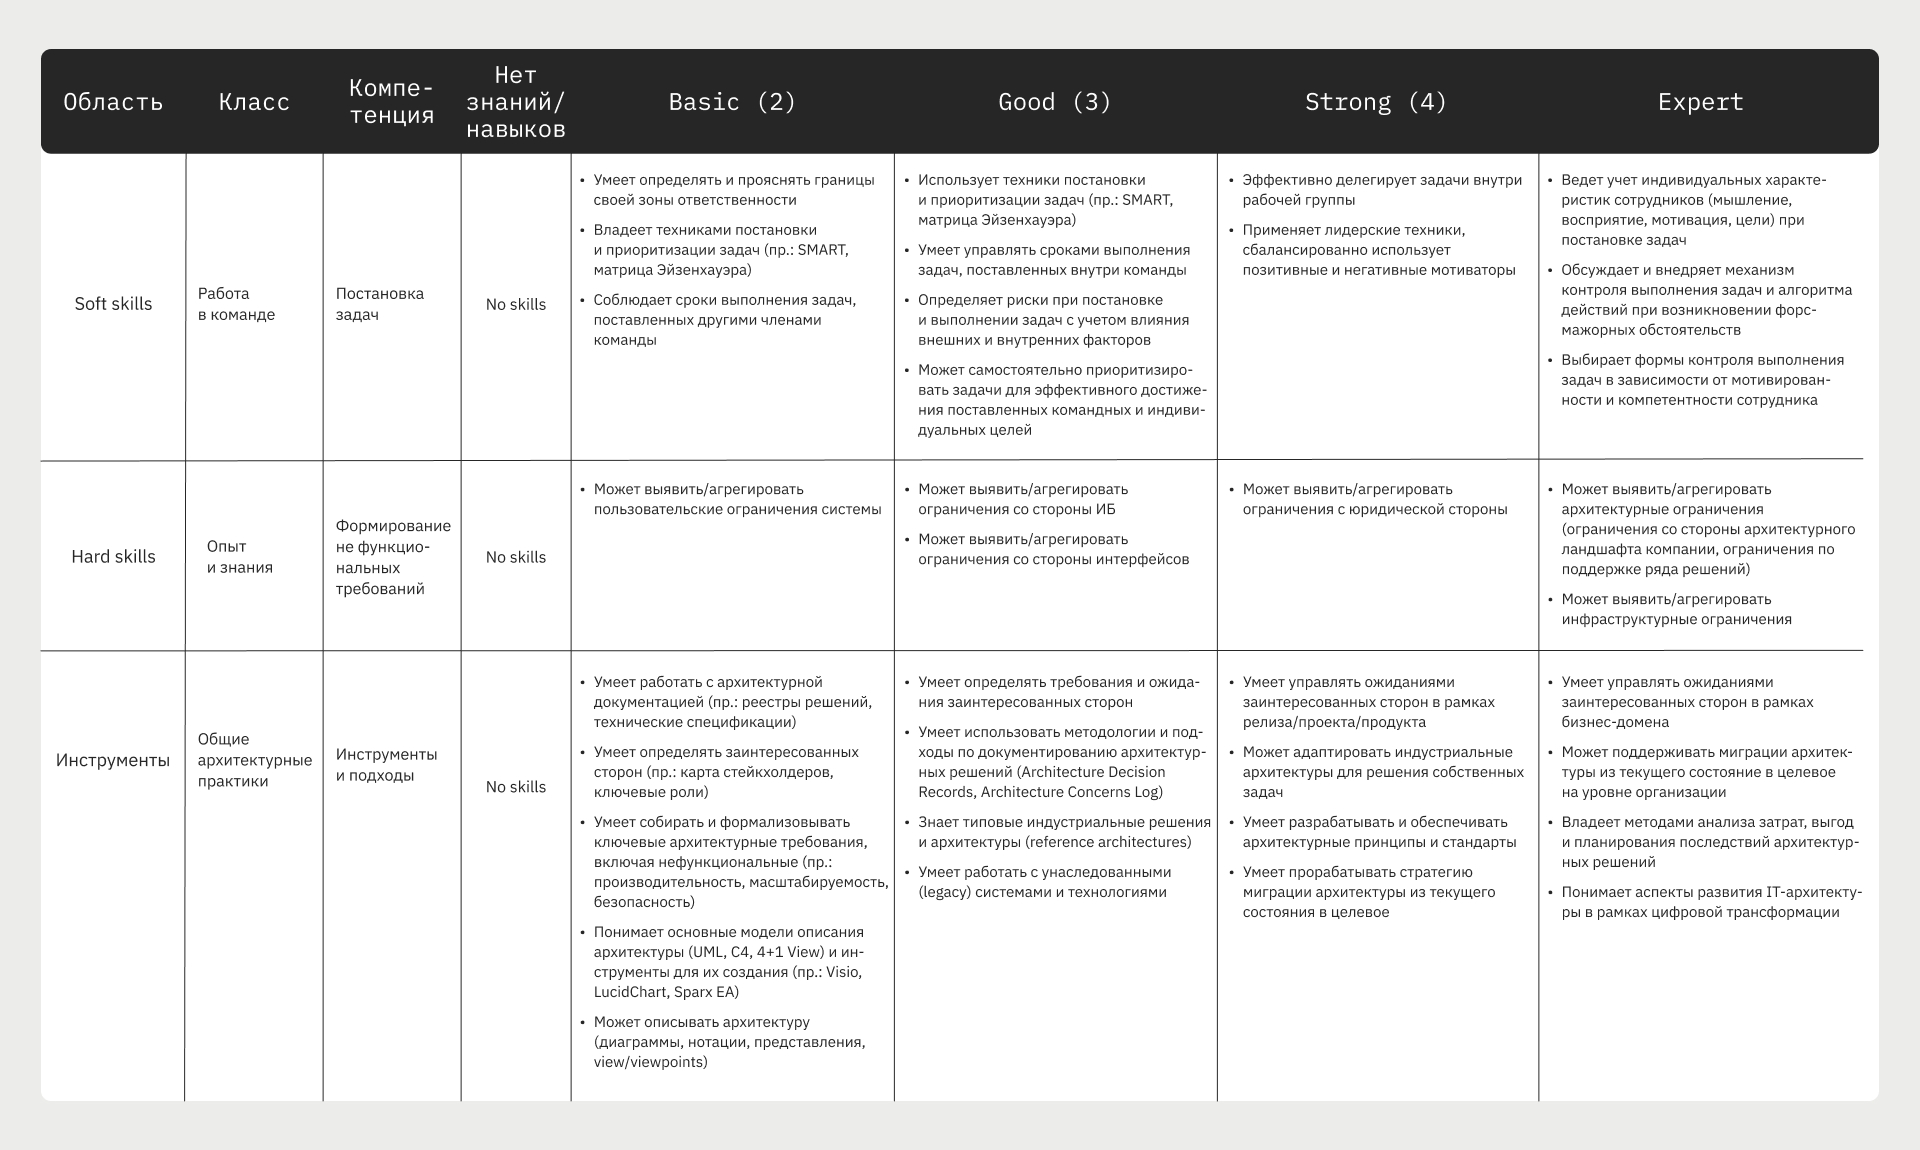 Фрагмент матрицы компетенций системного аналитика с разделением компетенций по категориям: хард и софт скиллы, инструменты